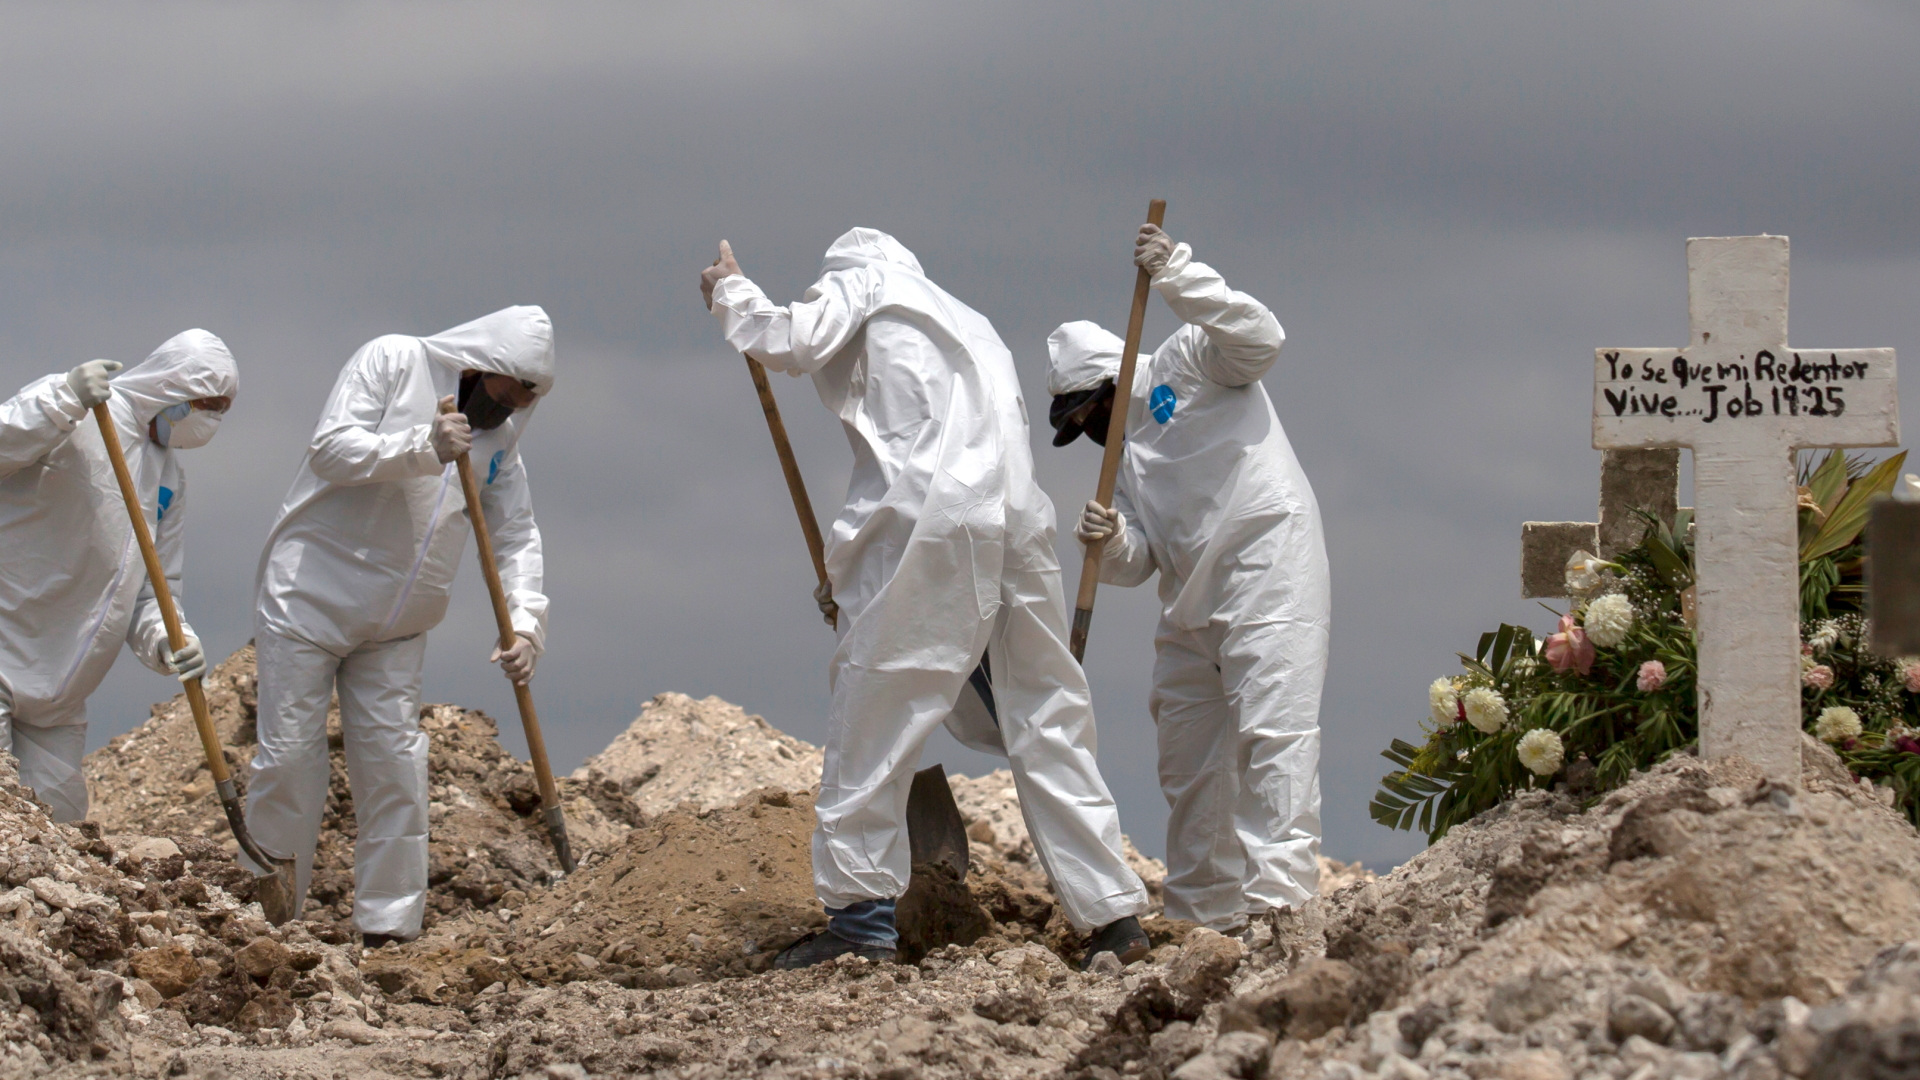 Tijuana: Arbeiter in Schutzanzüge schaufeln Erde bei einer Beerdigung im Rahmen der Covid-19-Pandemie. | Bildquelle: dpa